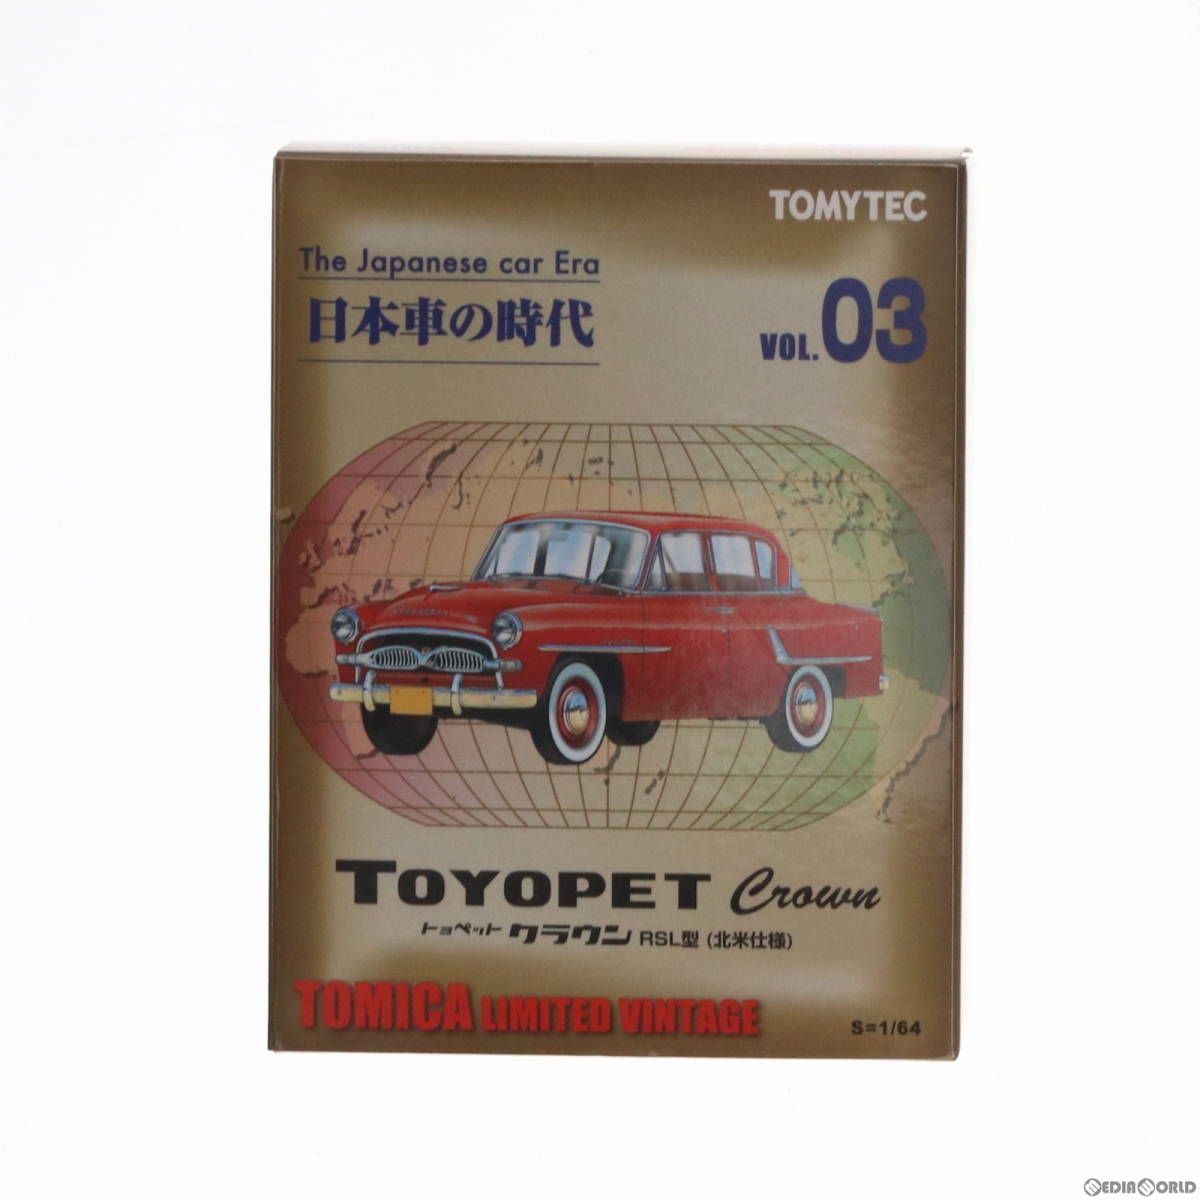 【中古】[MDL]トミカリミテッドヴィンテージ 日本車の時代3 TLV トヨペットクラウン 米国仕様(レッド) 1/64 完成品 ミニカー(258384) TOMYTの画像1